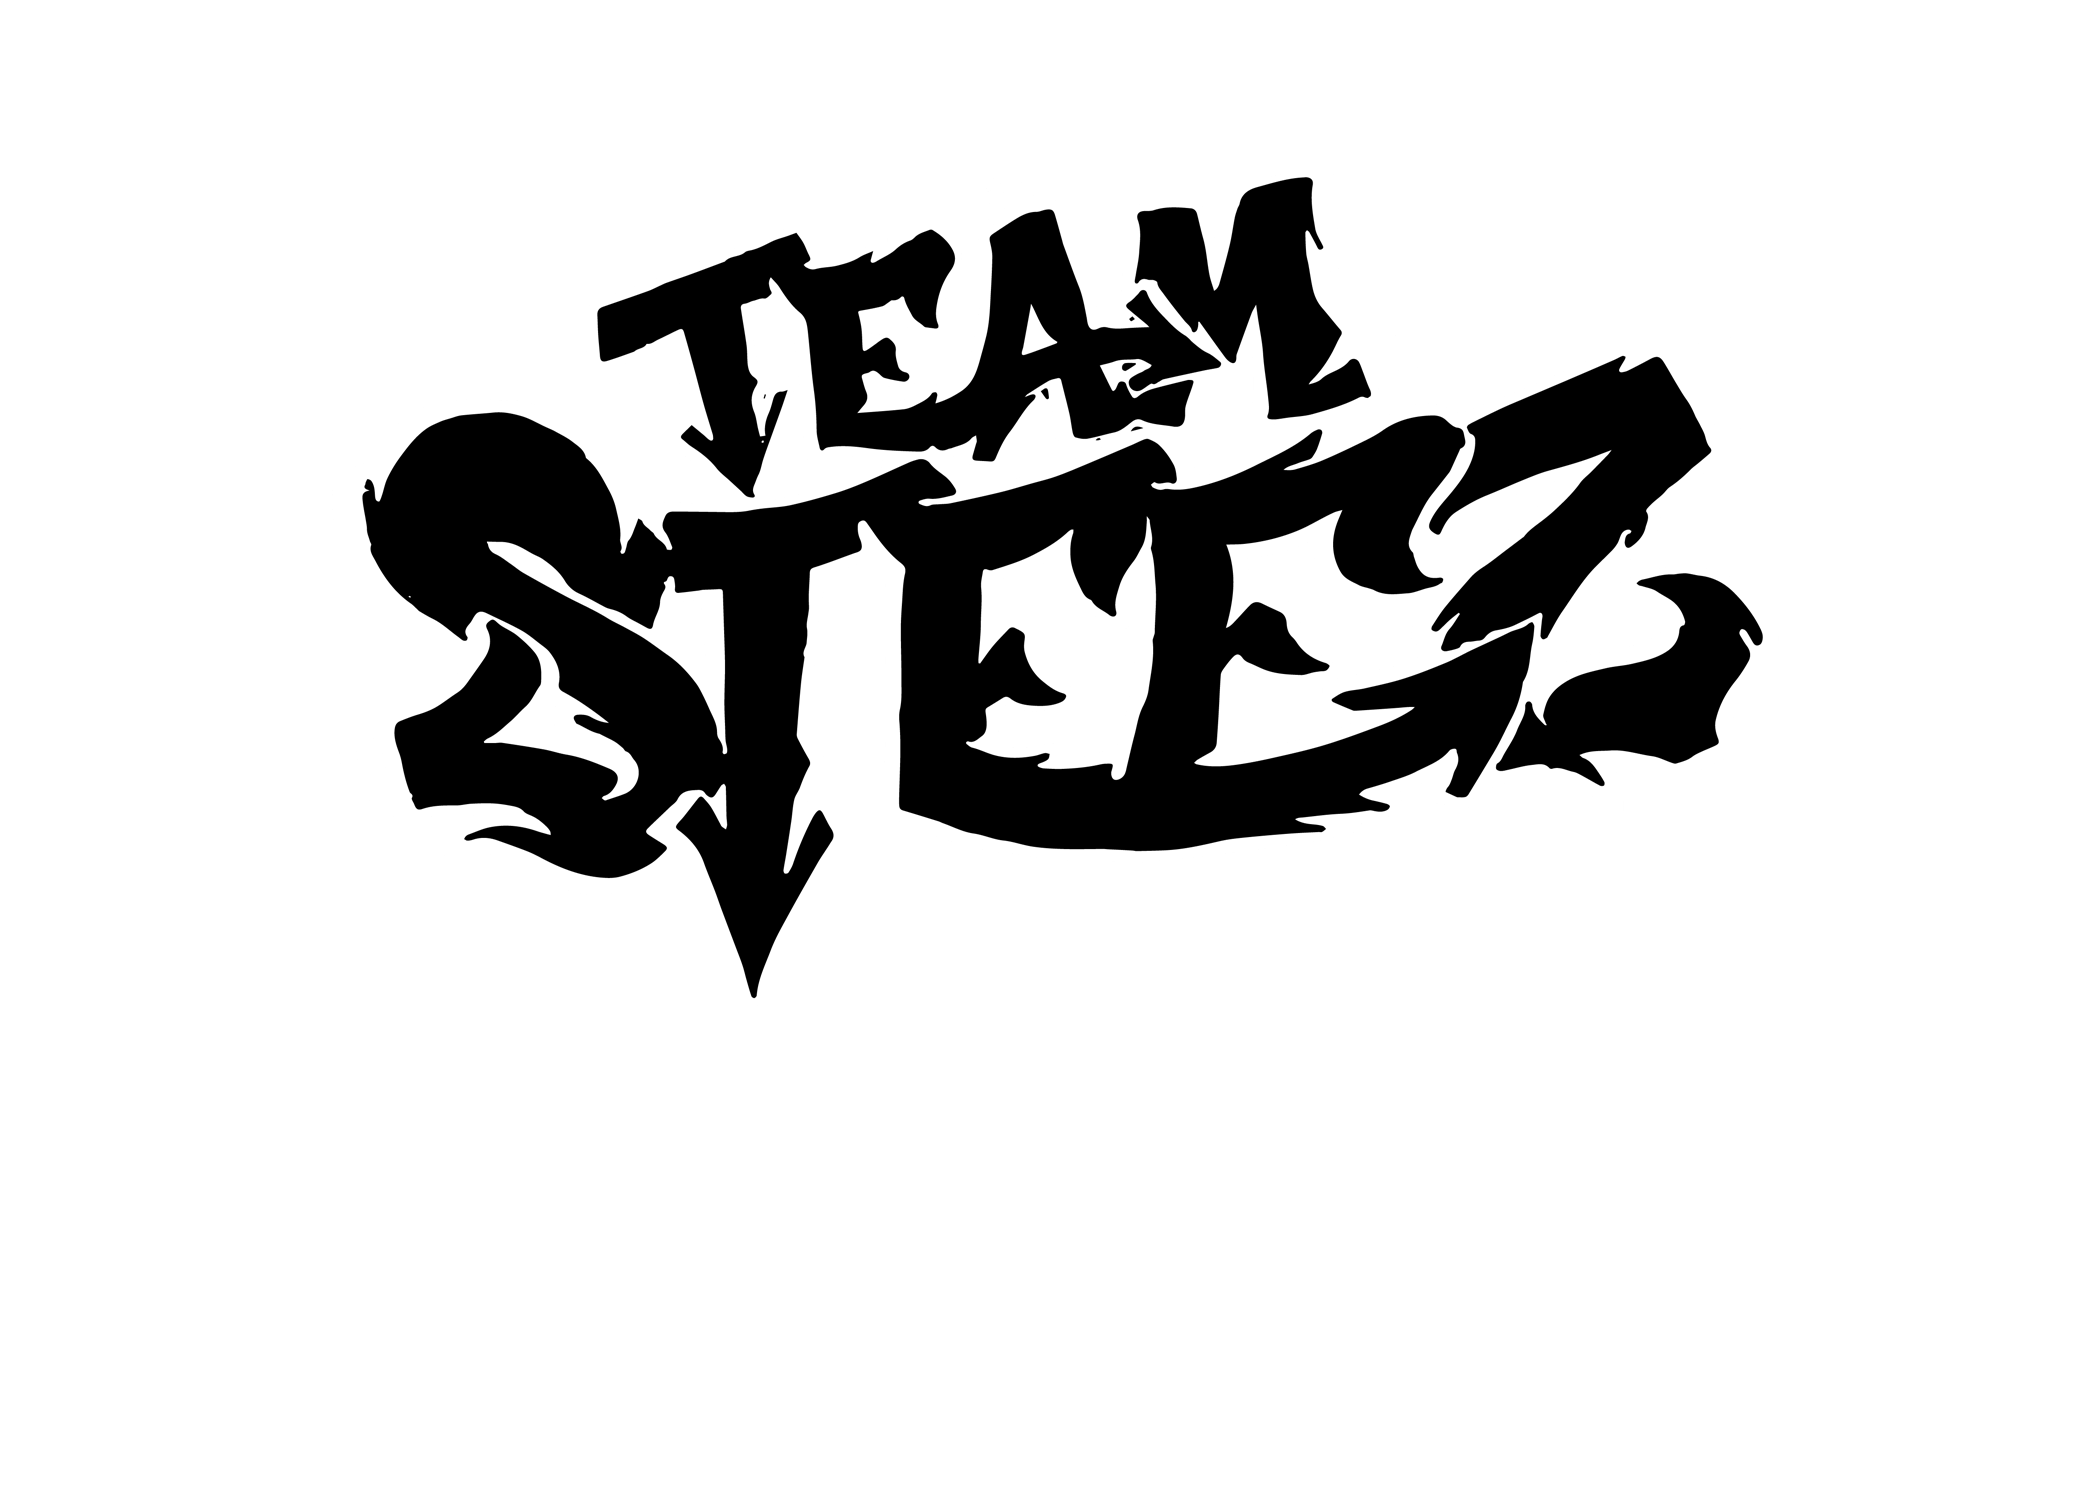 Team Steez